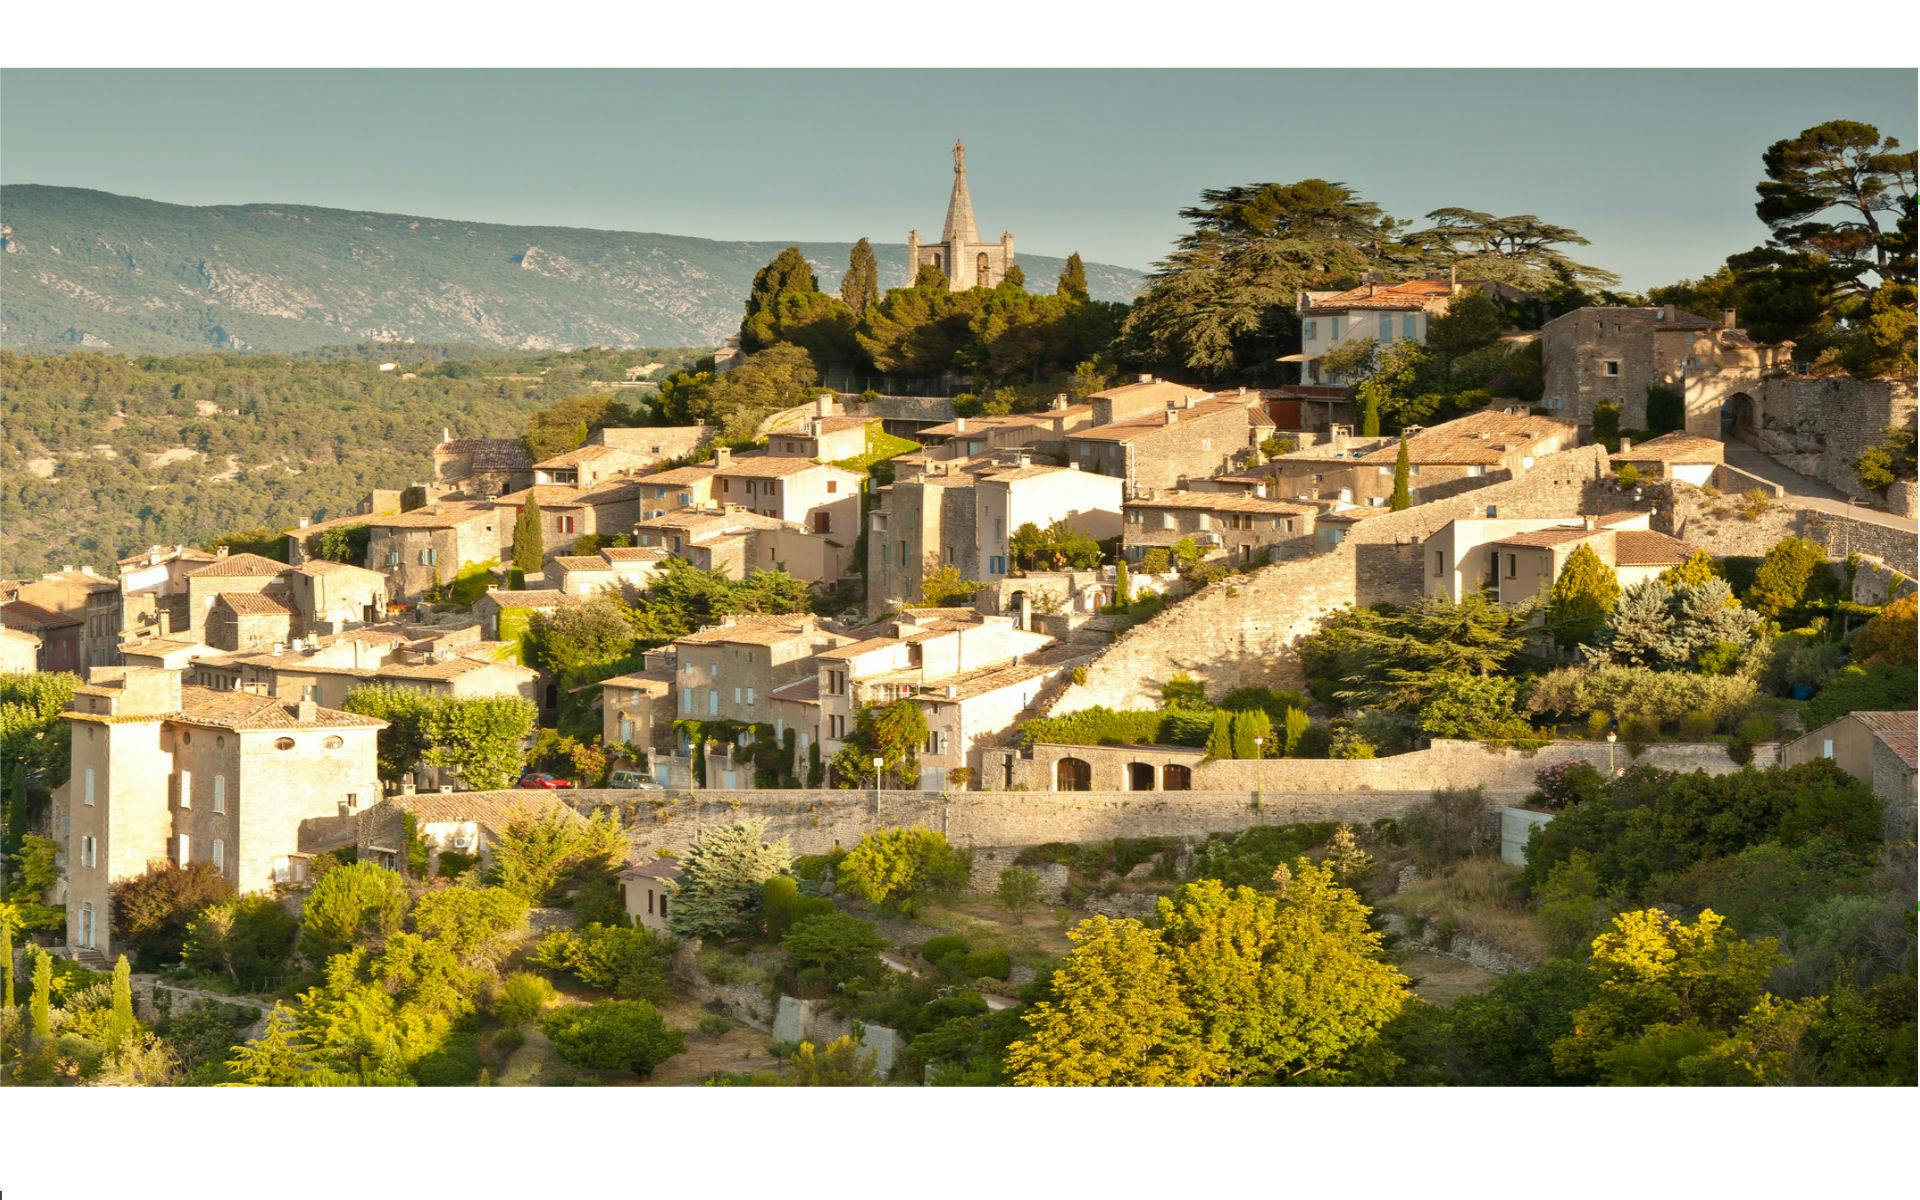 Excursão de meio dia nas aldeias no topo das colinas de Luberon saindo de Aix en Provence